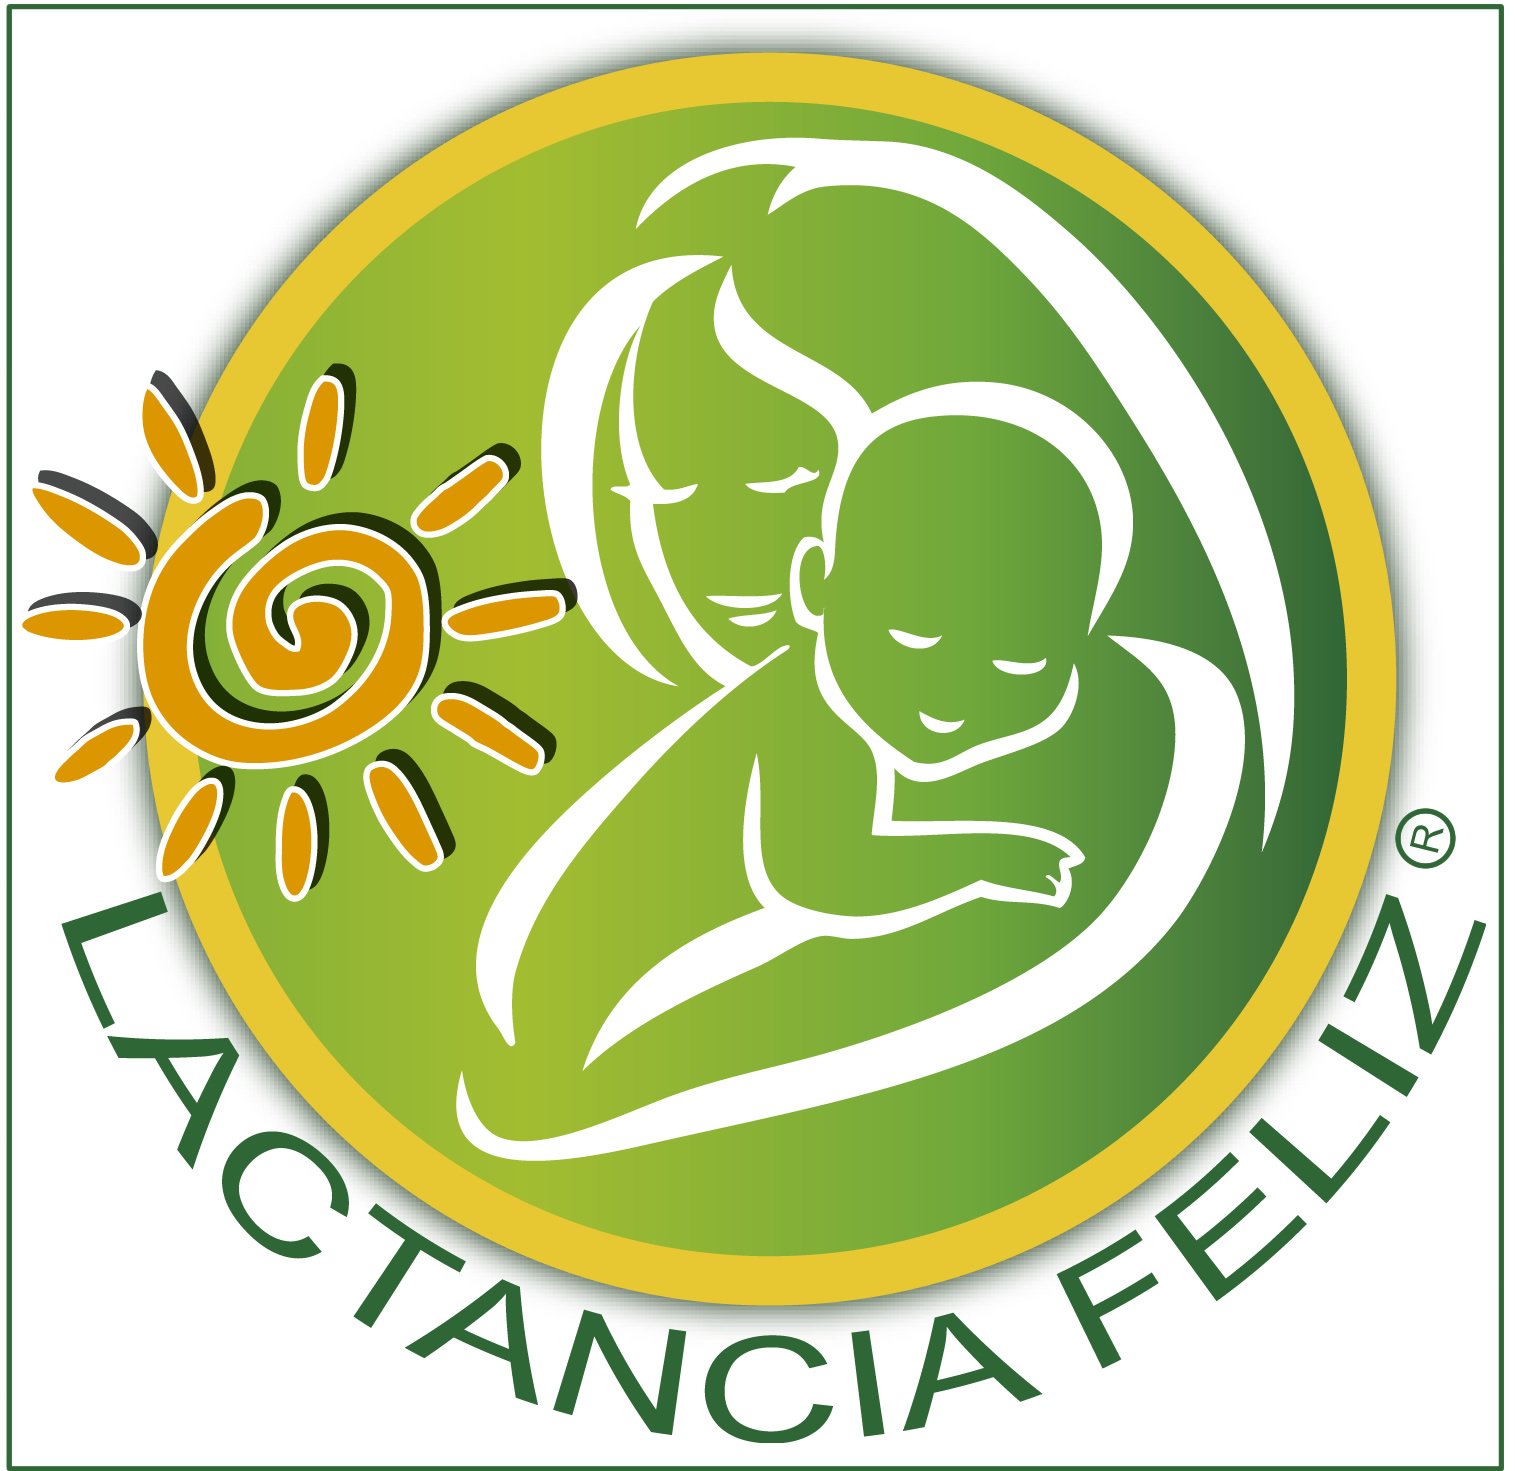 Empresa dedicada a la lactancia materna en la V región de Chile. 
https://t.co/w2VY3V0G9W
#lactanciafeliz
@Lactancia_feliz